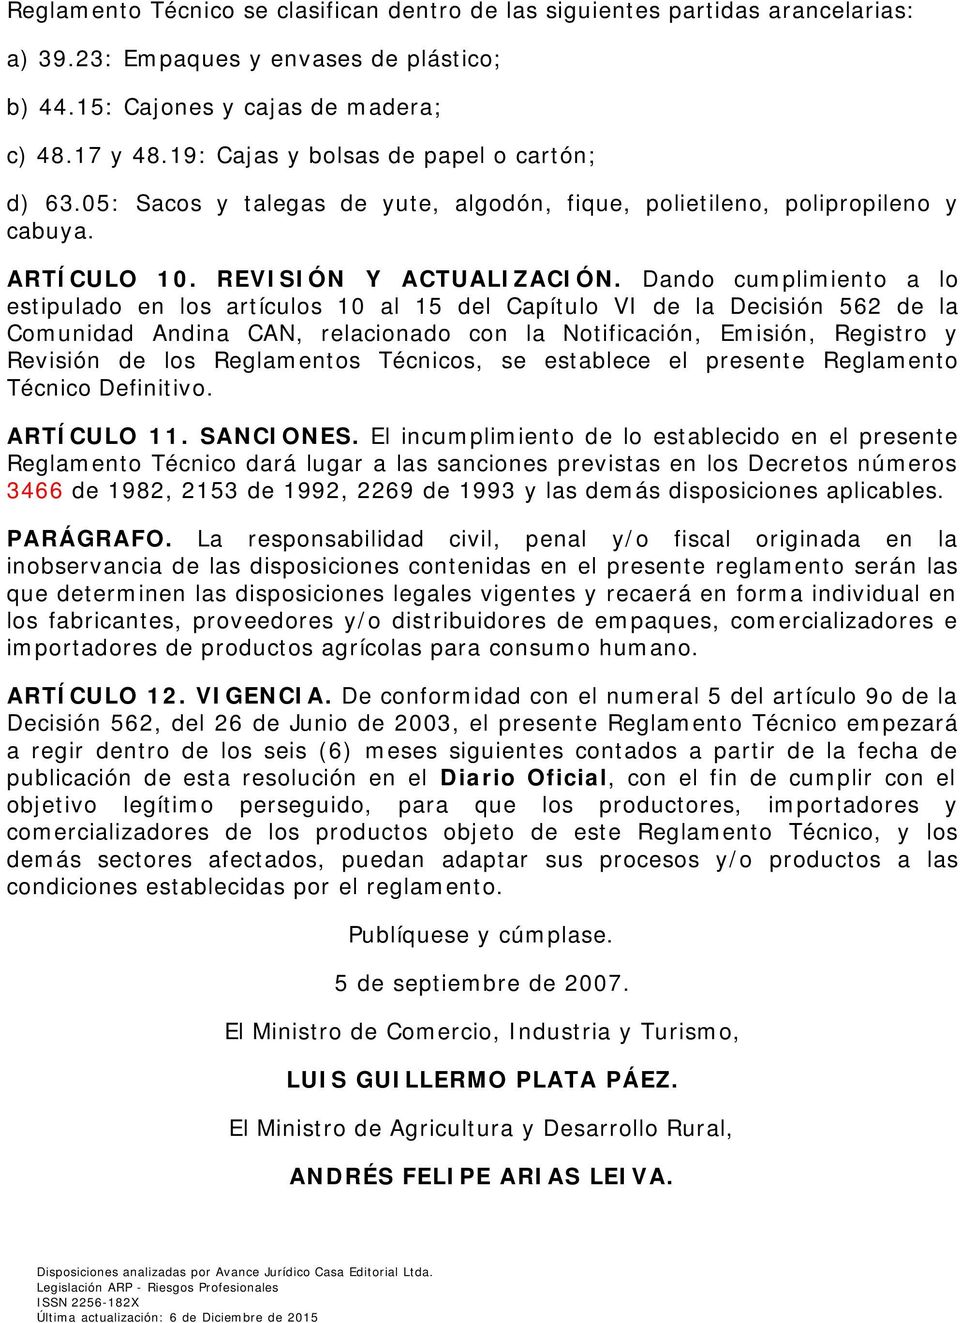 Dando cumplimiento a lo estipulado en los artículos 10 al 15 del Capítulo VI de la Decisión 562 de la Comunidad Andina CAN, relacionado con la Notificación, Emisión, Registro y Revisión de los